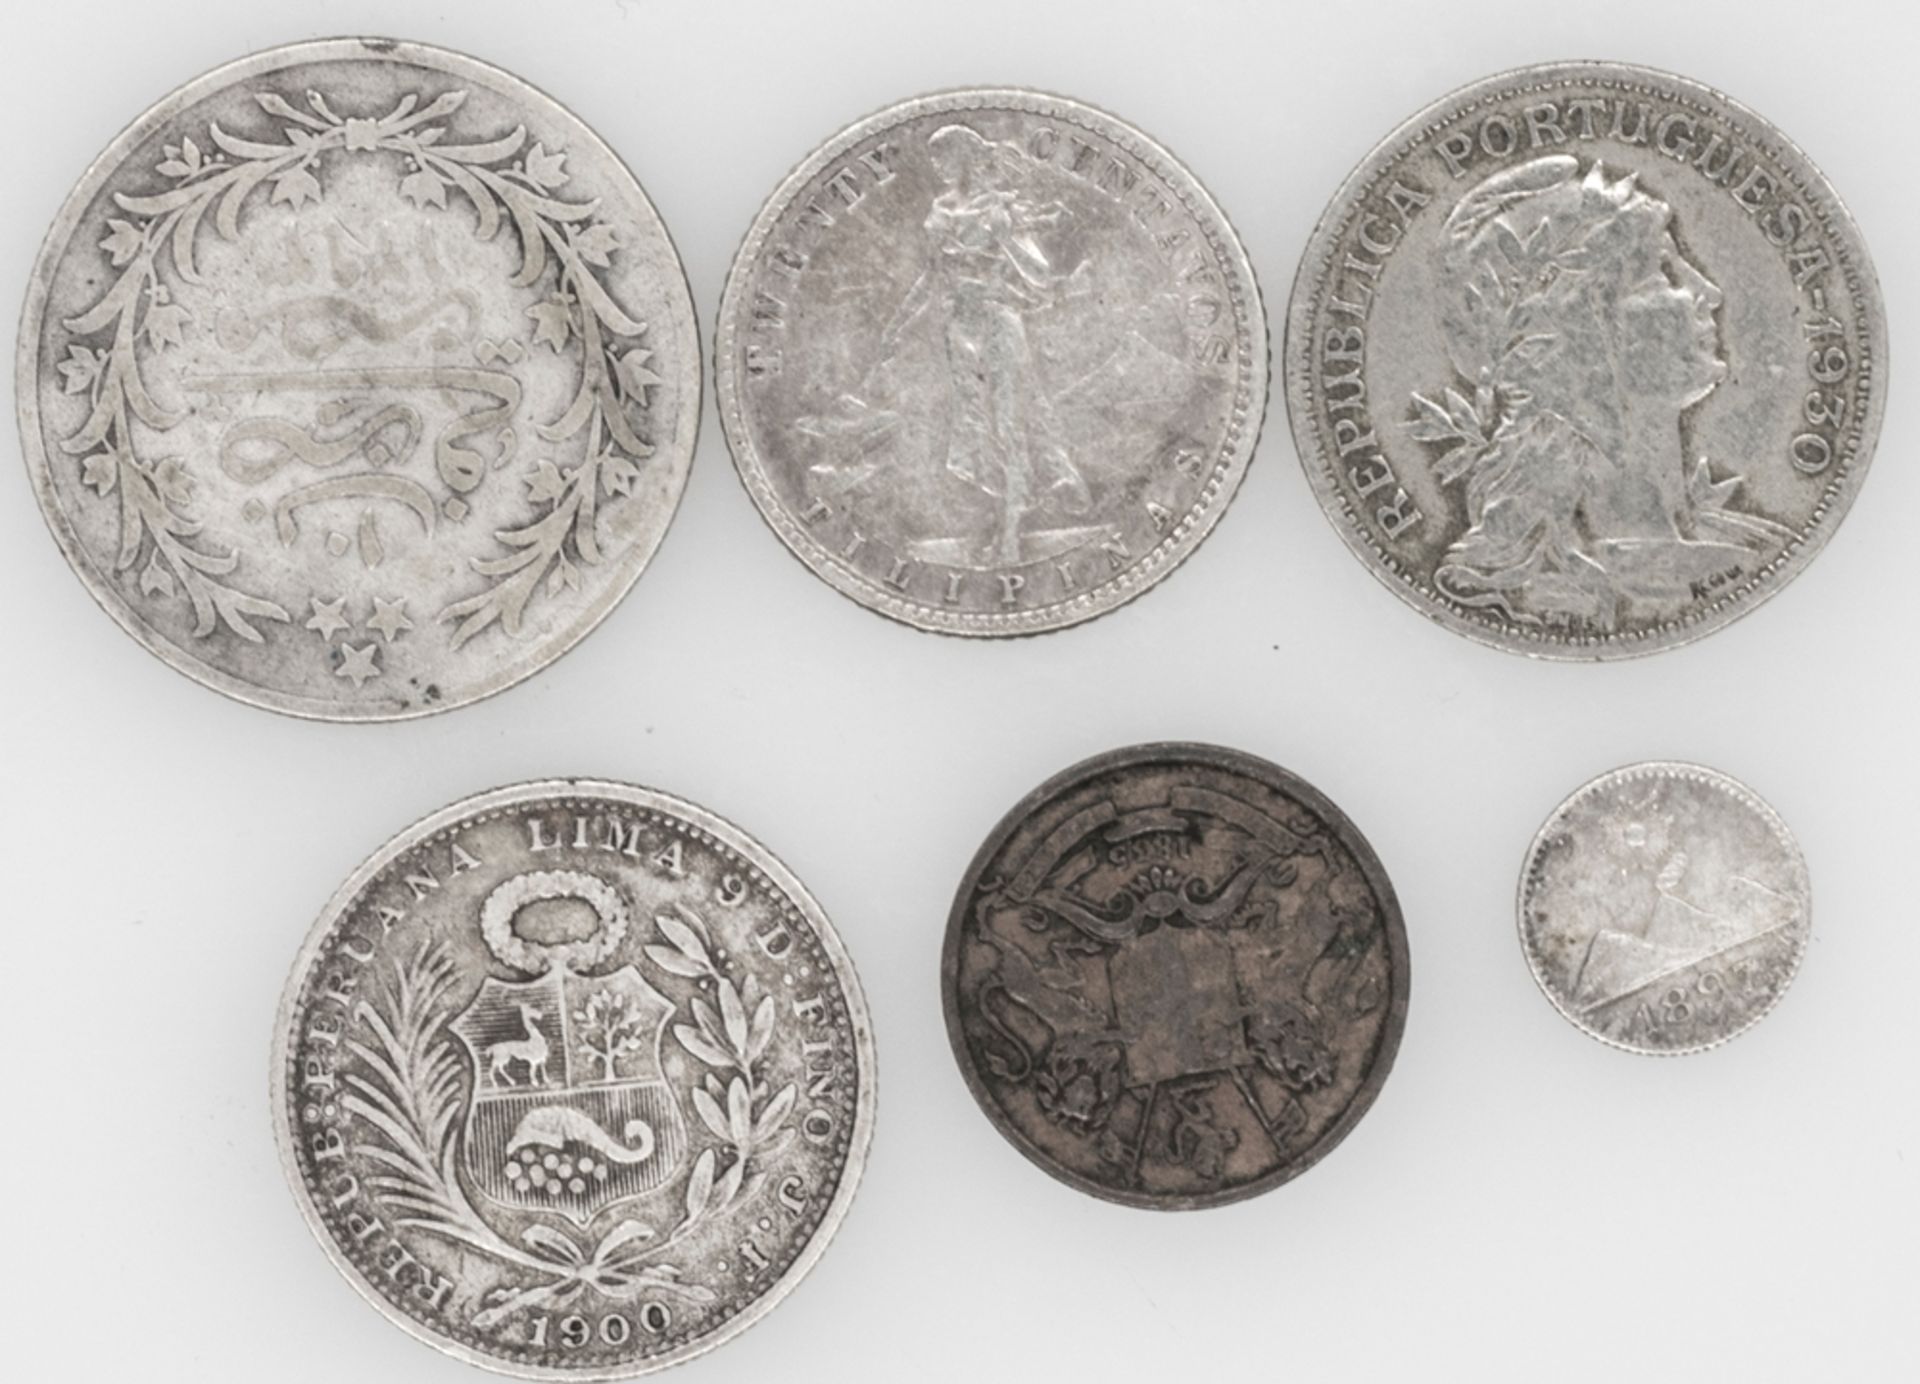 Lot Münzen aus aller Welt, dabei auch Silbermünzen. Bestehend aus: Peru 1900 5 Sol, Portugal - Cap - Image 2 of 2